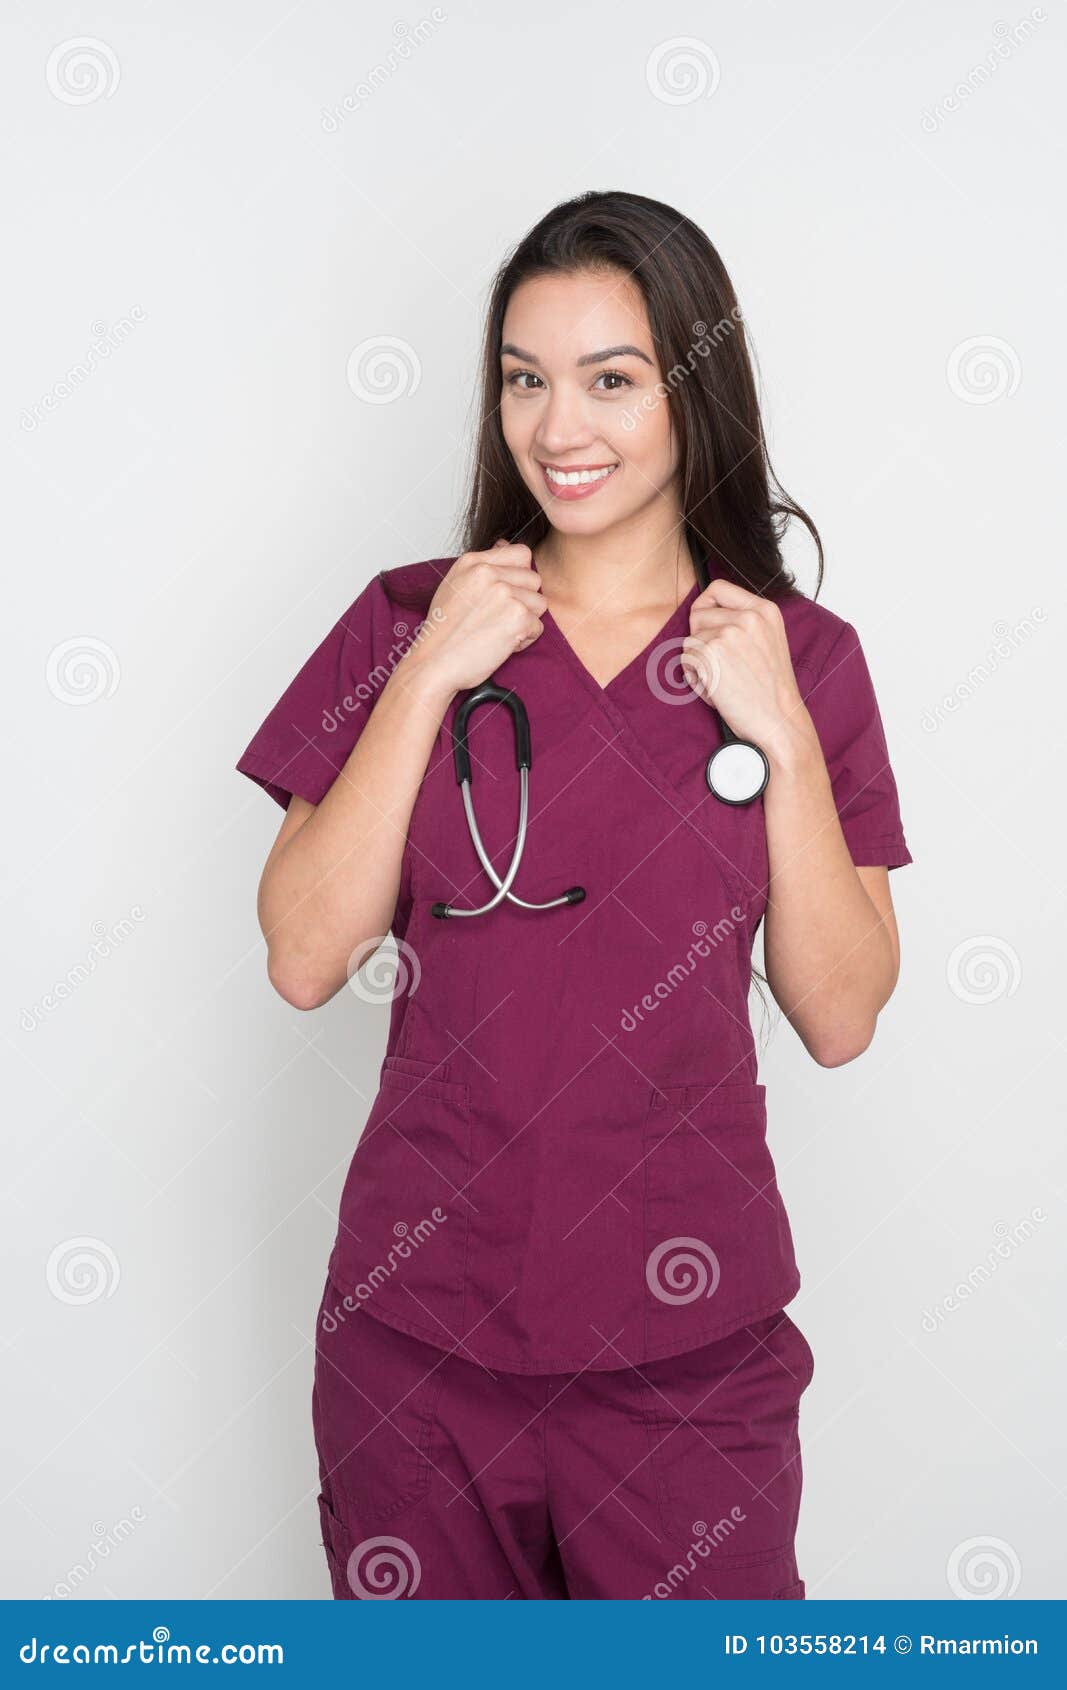 deddy herfiandi recommends nurse in scrubs hj pic